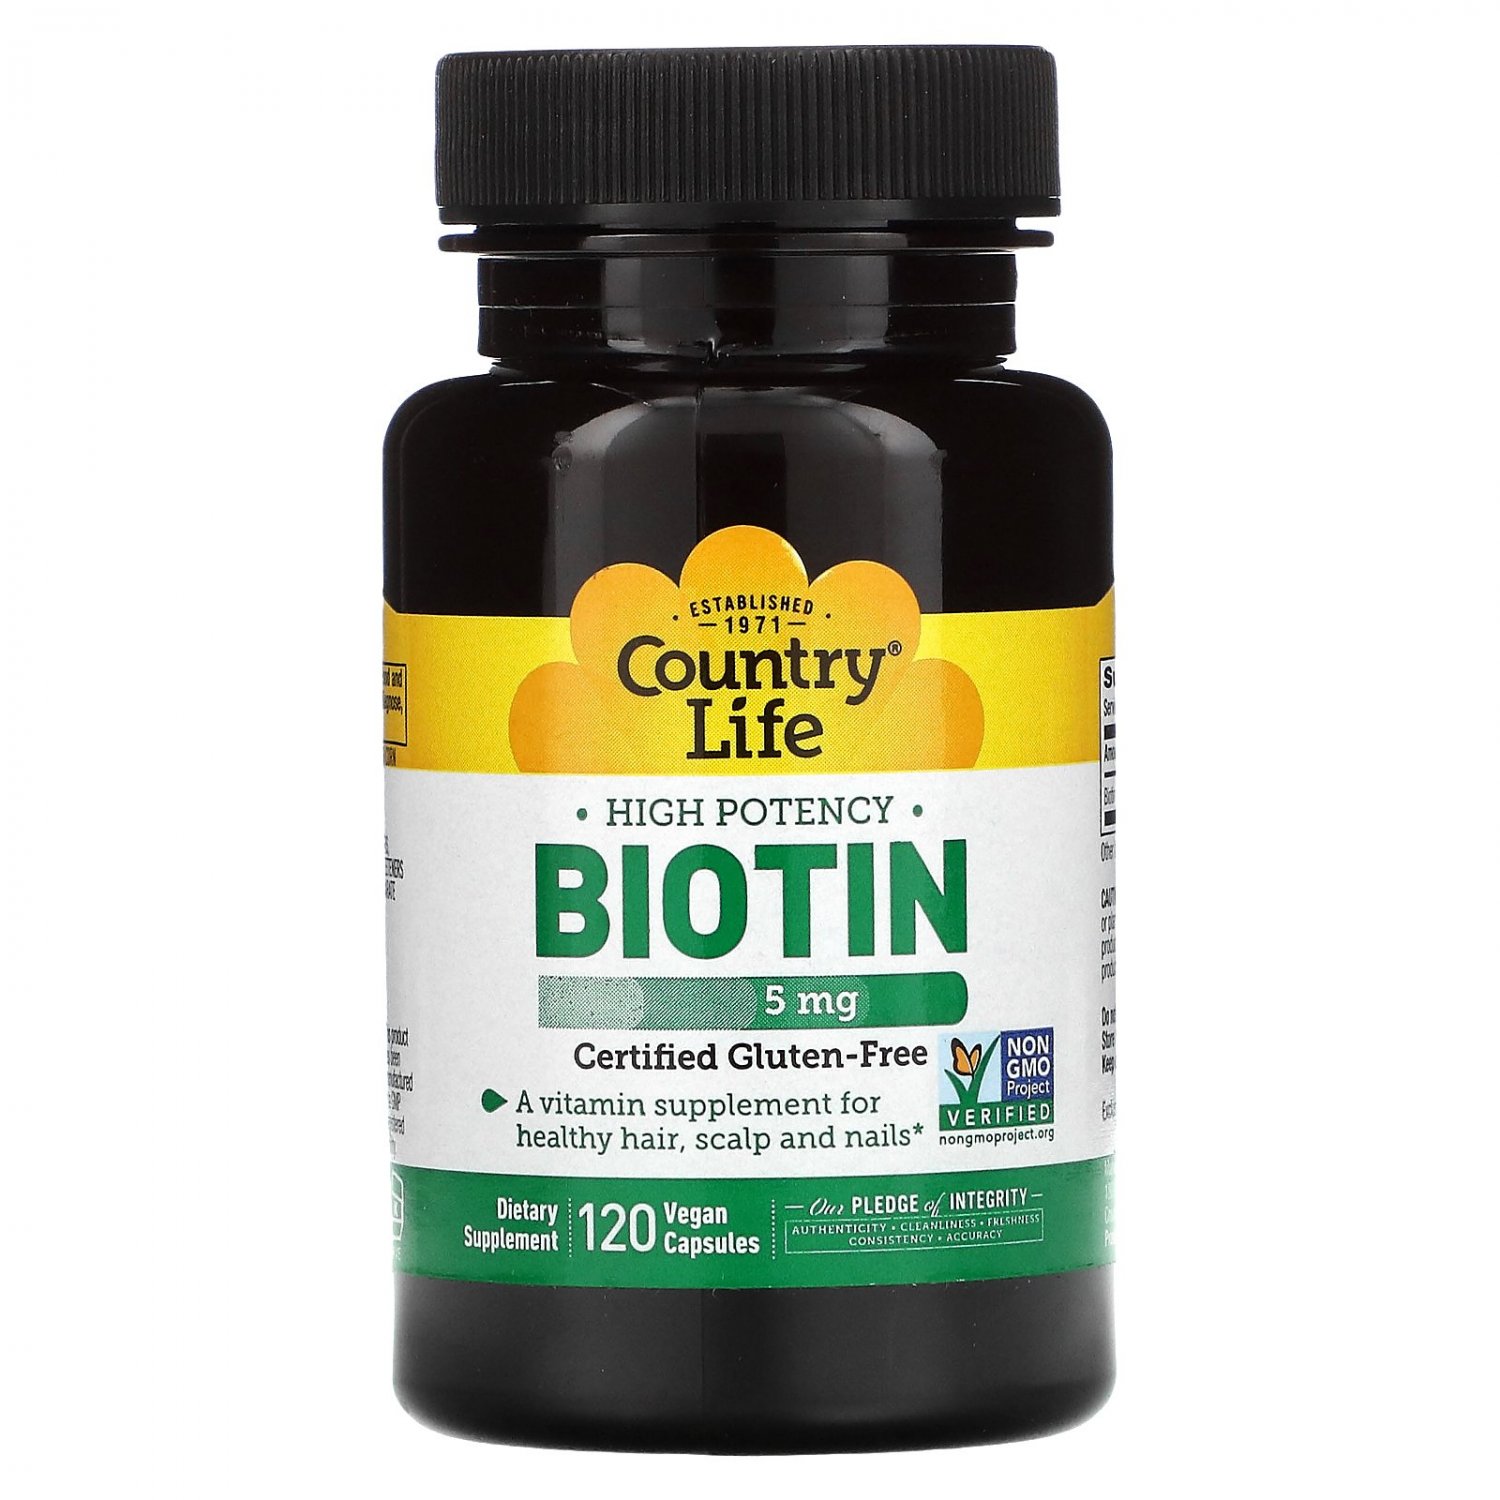 Country Life High Potency Biotin 5mg 120 Vegan Capsules